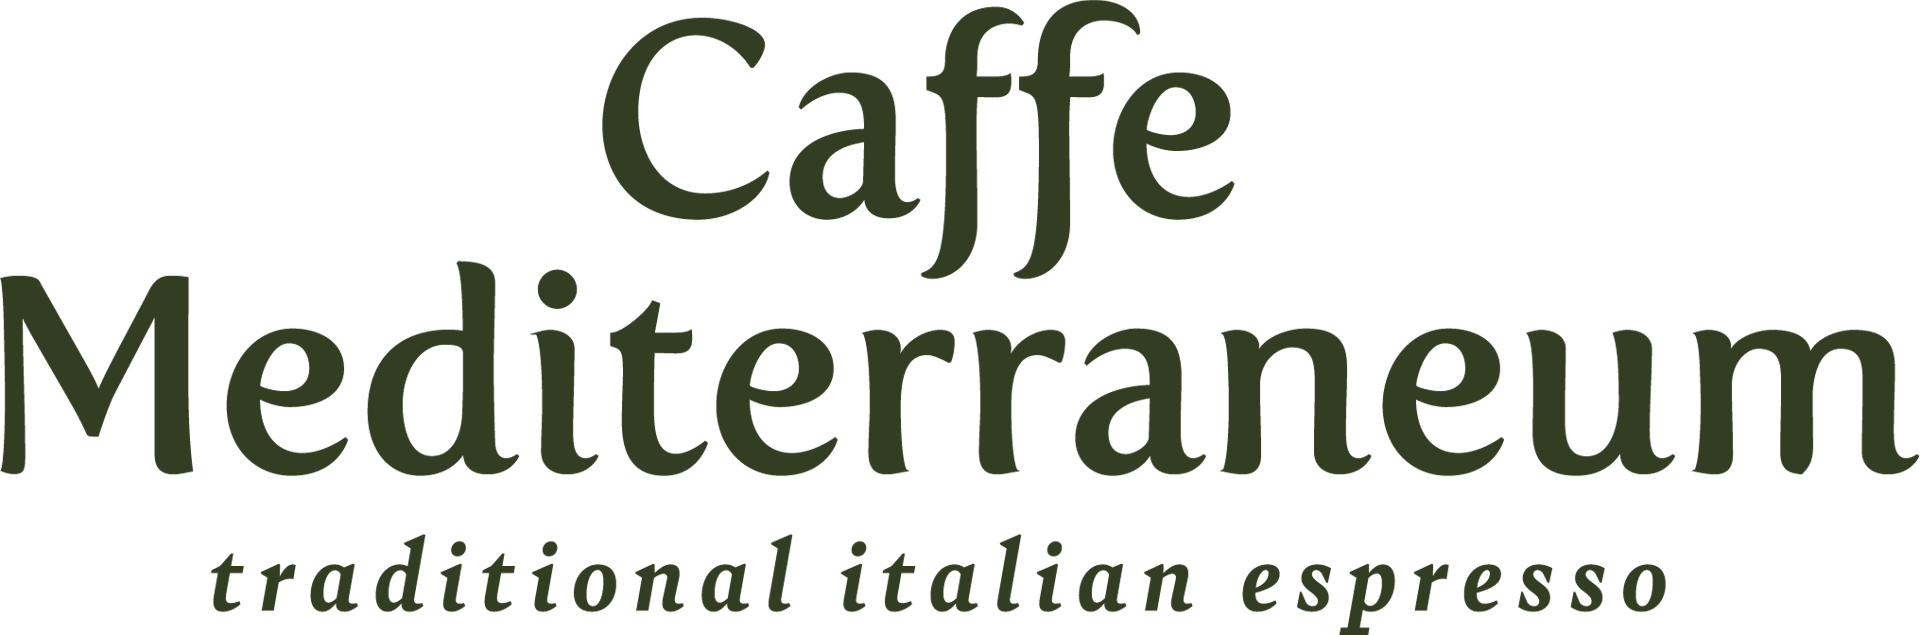 Caffe Mediterraneum